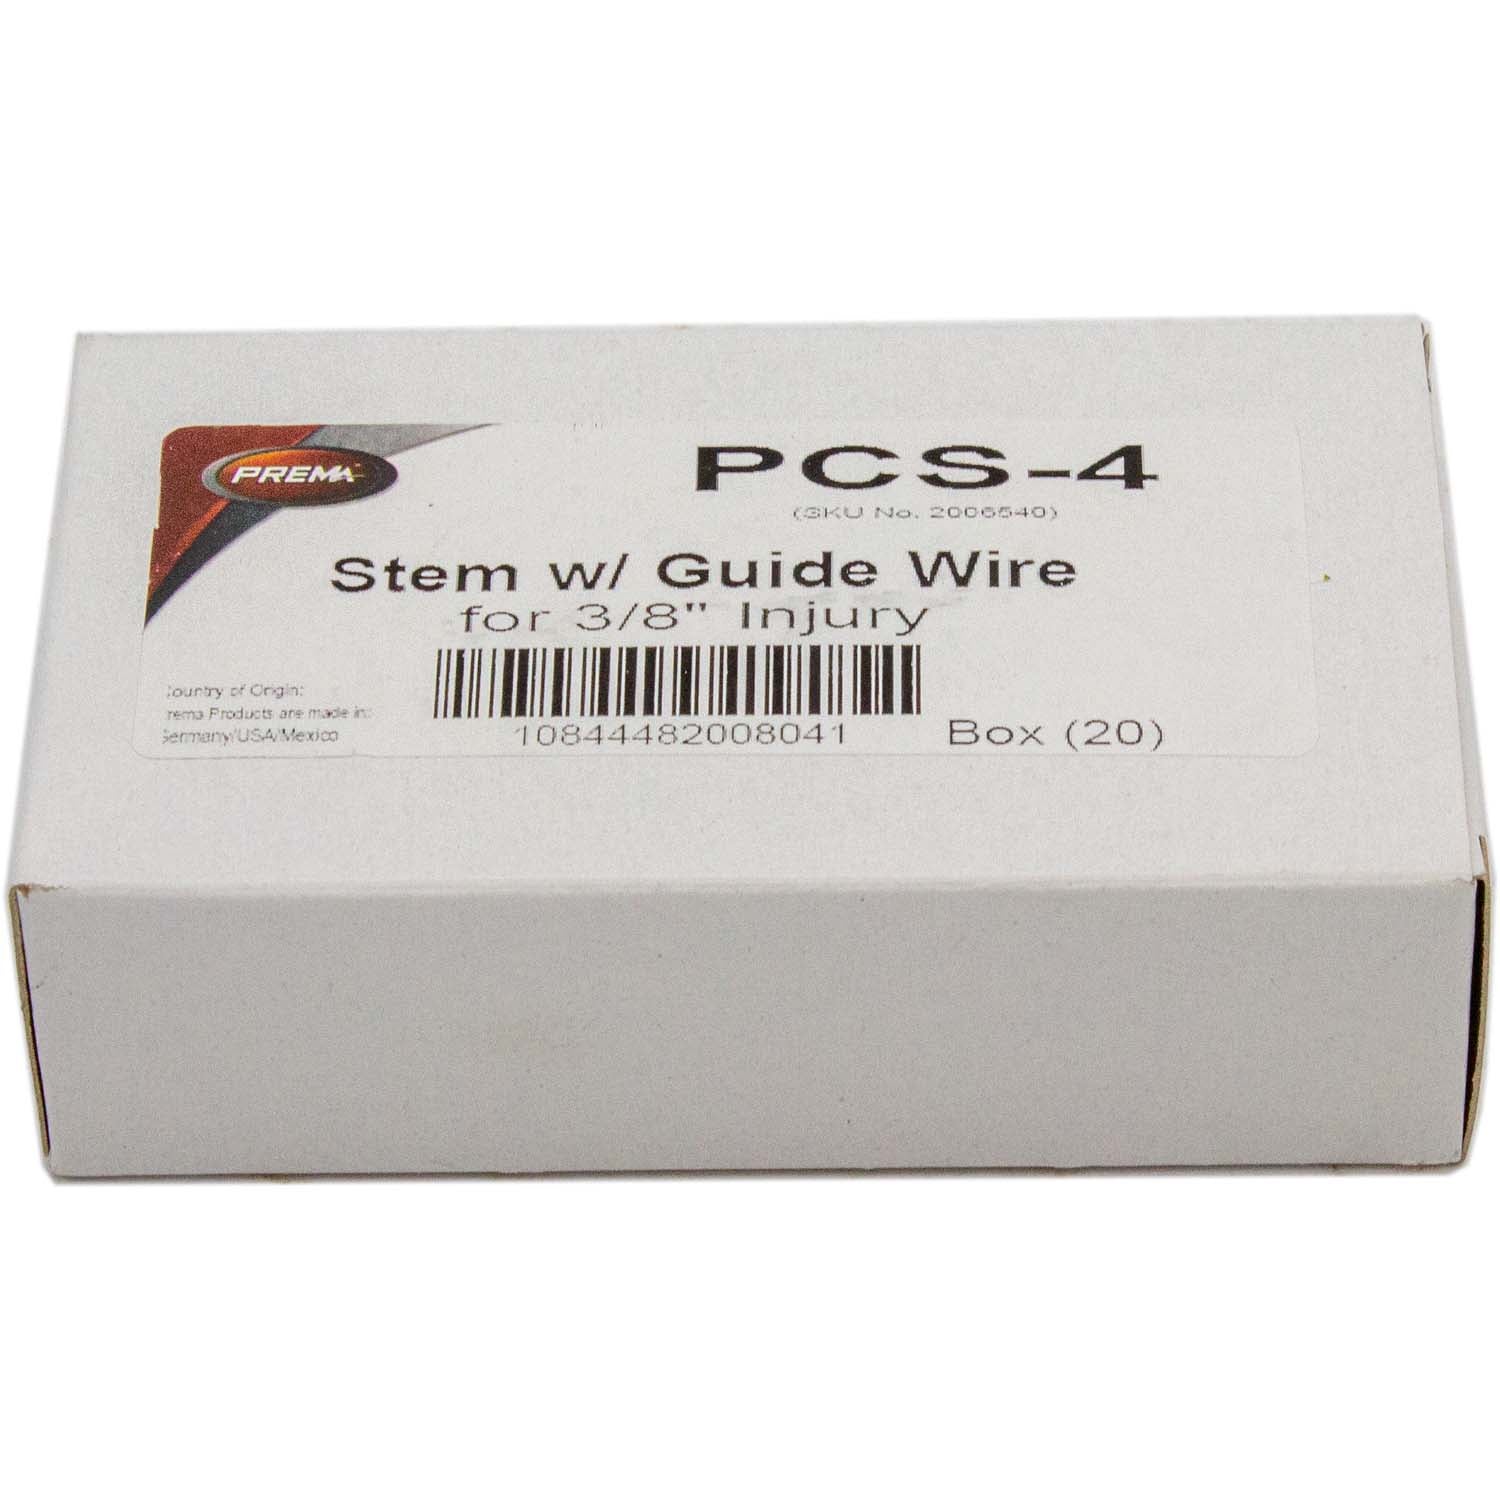 Prema PCS-4 3/8" Tire Plug with Wire Box of 20